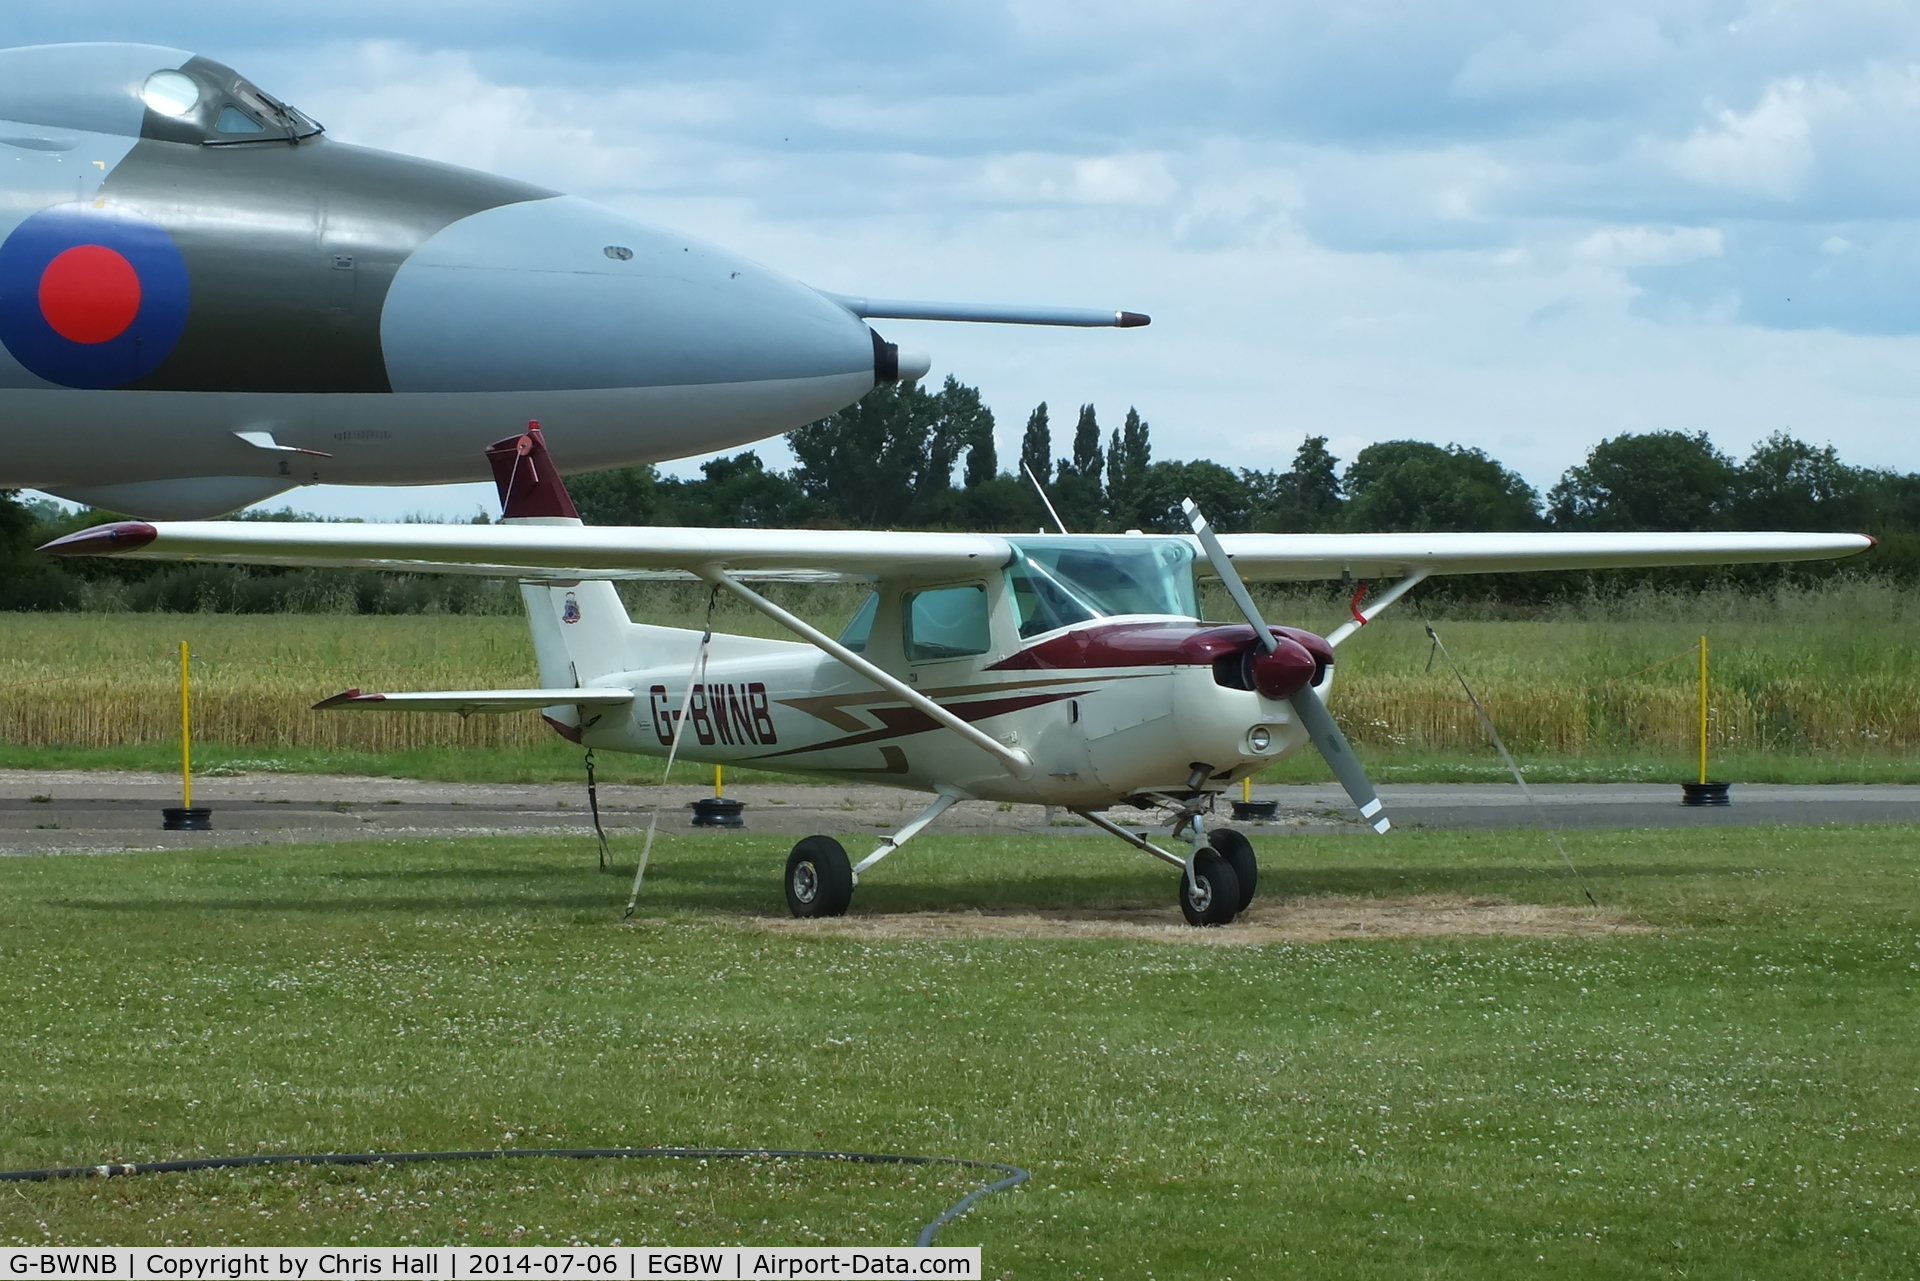 G-BWNB, 1978 Cessna 152 C/N 152-80051, South Warwickshire Flying School